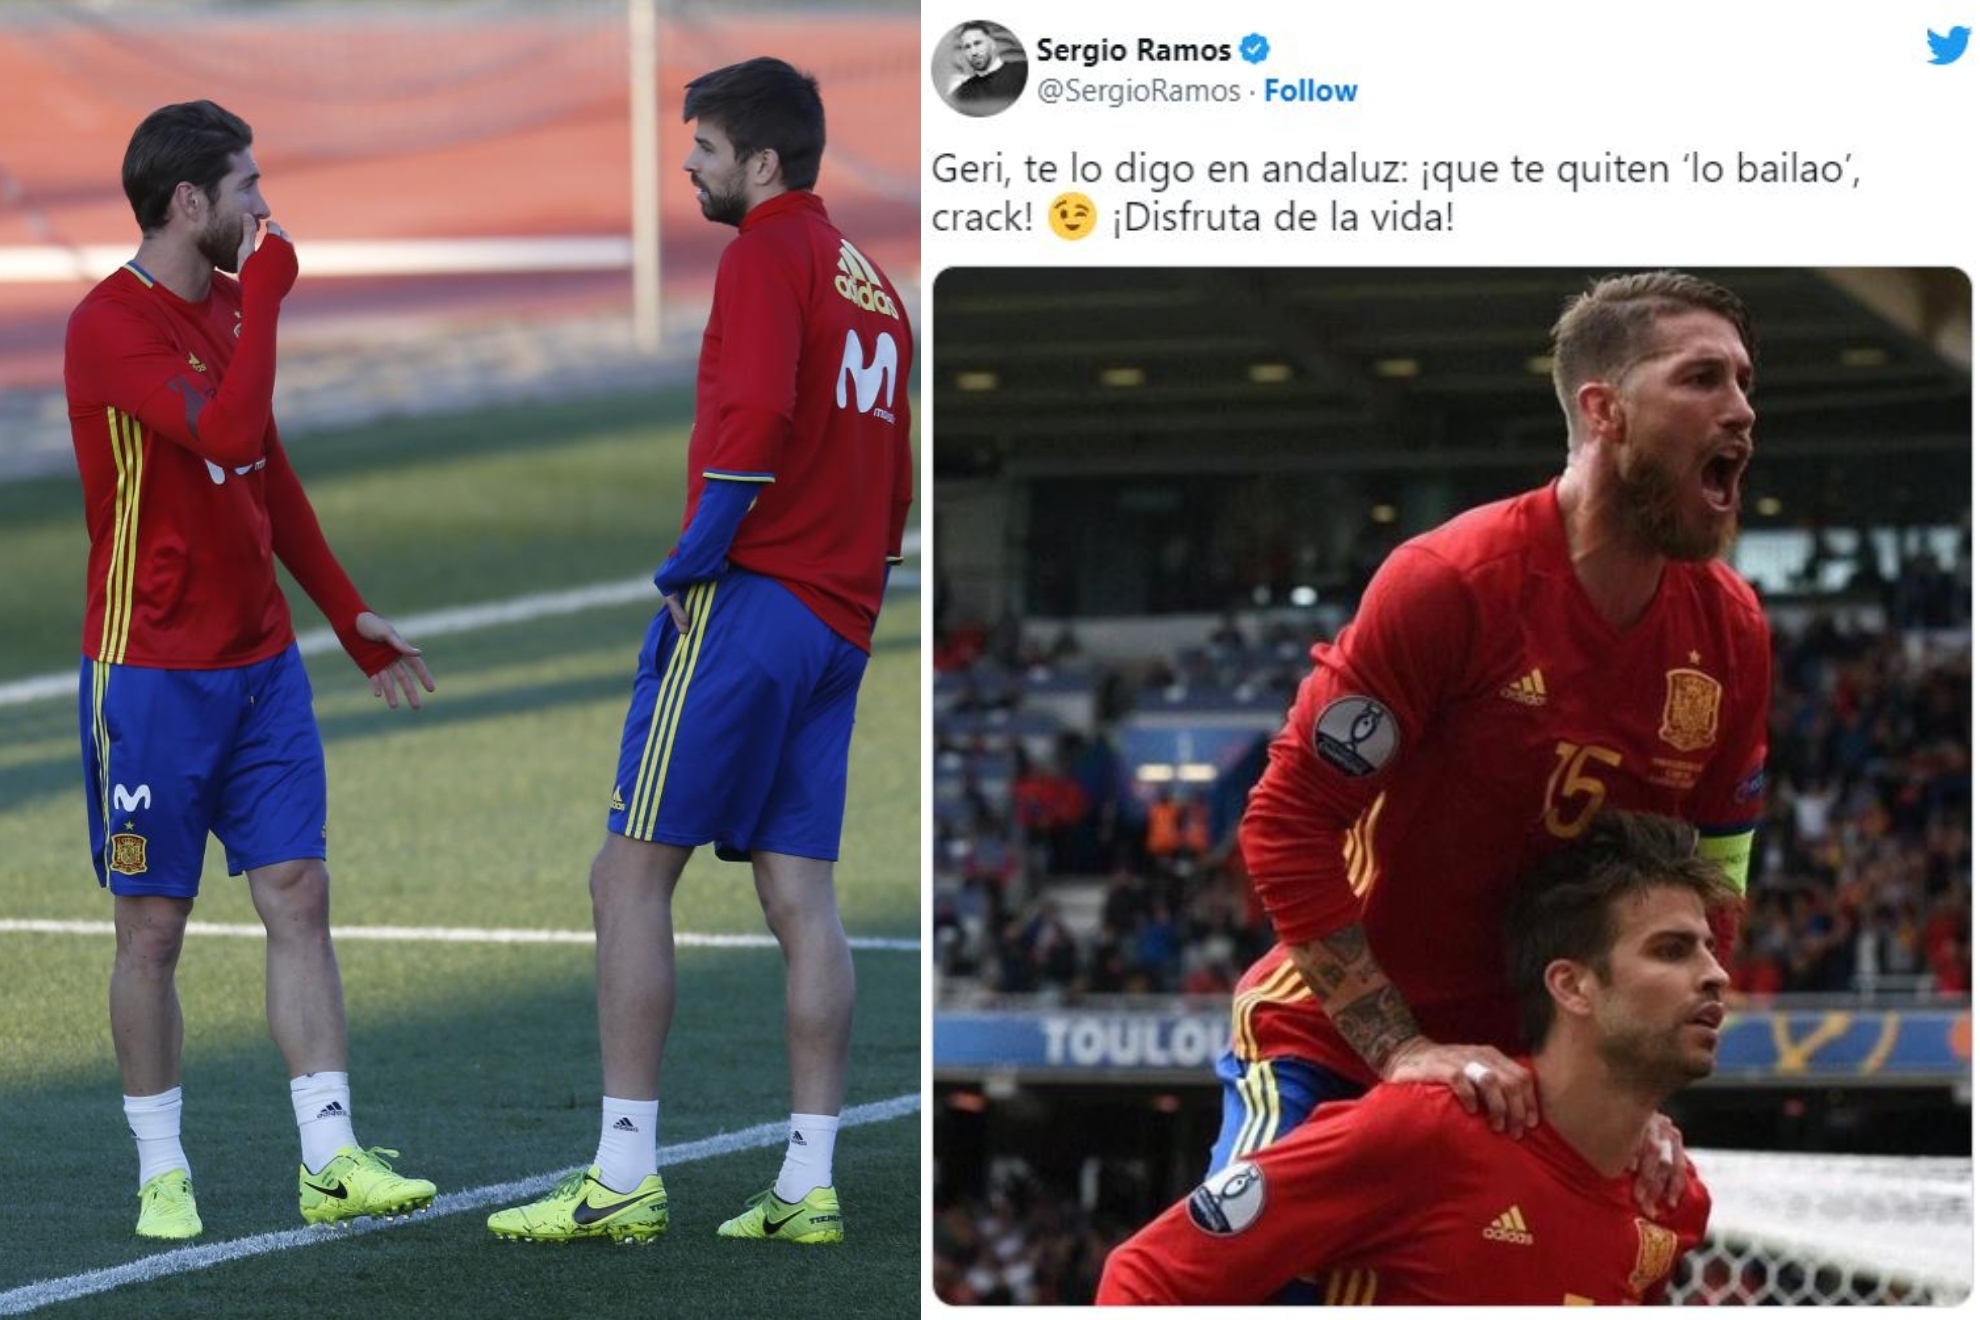 Ciudad Menda Analista He aprendido FC Barcelona: El homenaje de Sergio Ramos a Piqué: "Geri, te lo digo en  andaluz: ¡que te quiten 'lo bailao', ¡crack!" | Marca